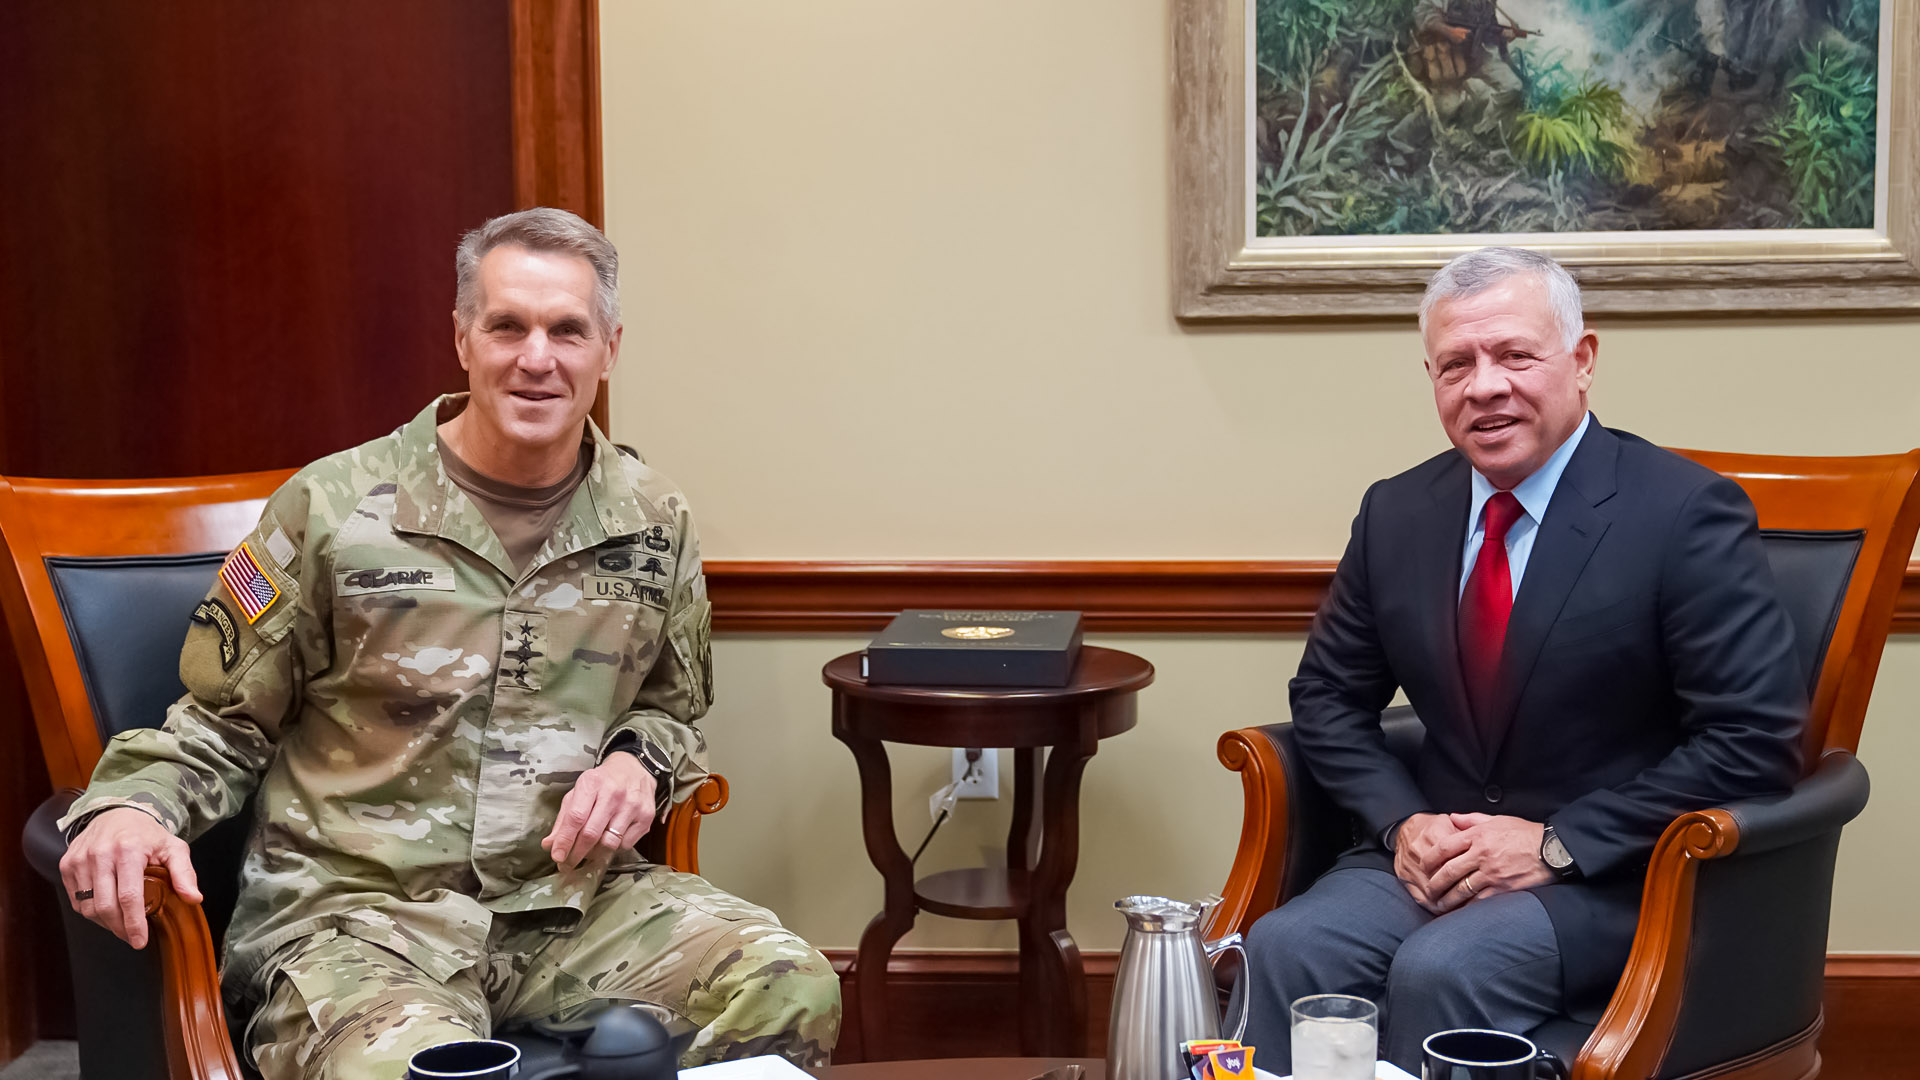 King Abdullah of Jordan meets US military officials in Tampa